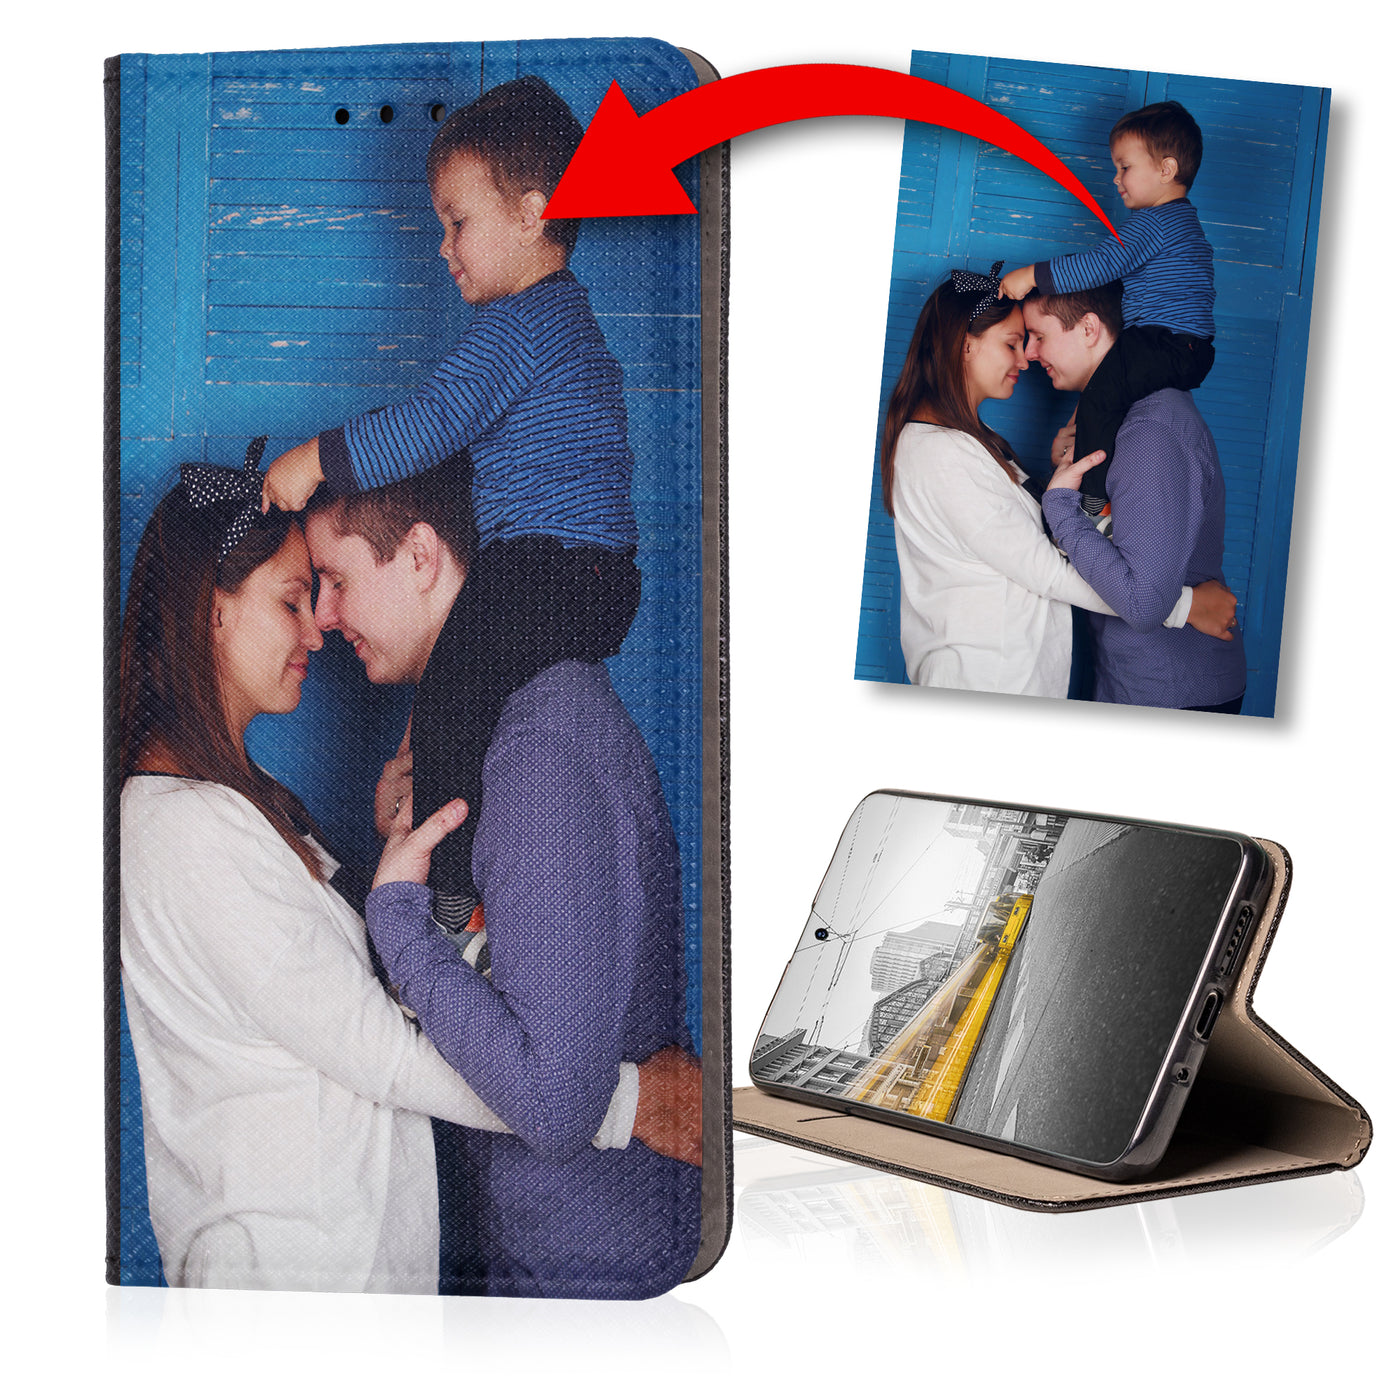 Handyhülle für Huawei P9 Lite 2015 personalisierte Hülle mit eigenem Bild Motiv Design Smart Magnet Klapphülle